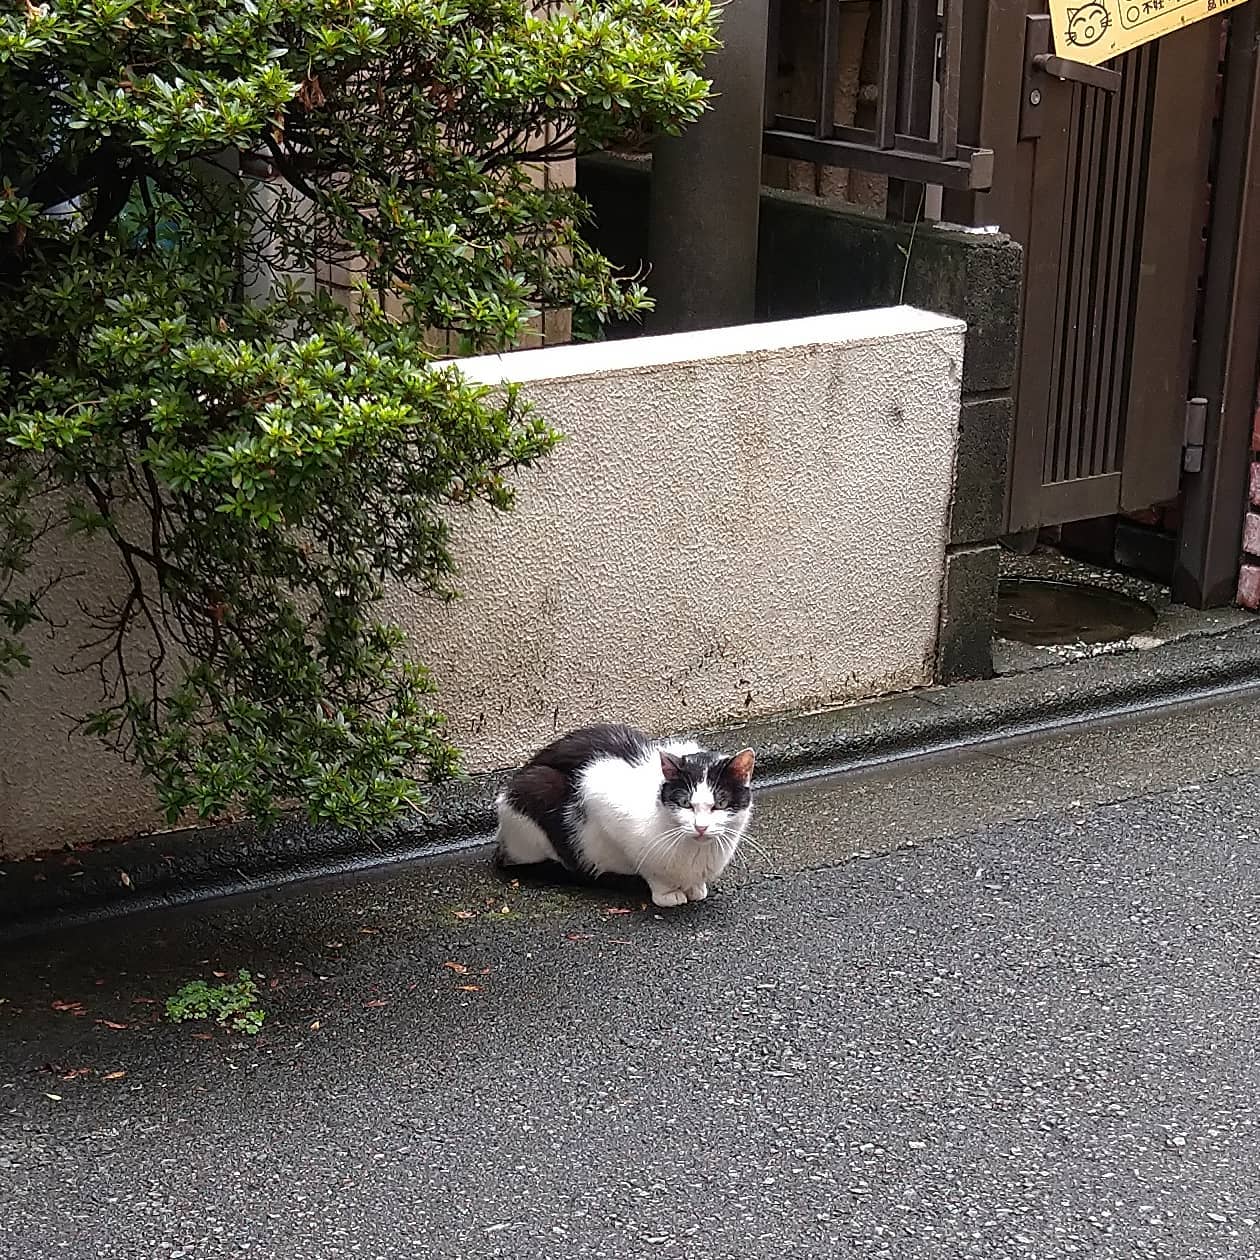 武蔵小山の猫図鑑昔、業務スーパーの隣の隣くらいにあった寿司屋の室外機に住んでいた牛柄猫感がありますな。#武蔵小山 #武蔵小山猫 #猫